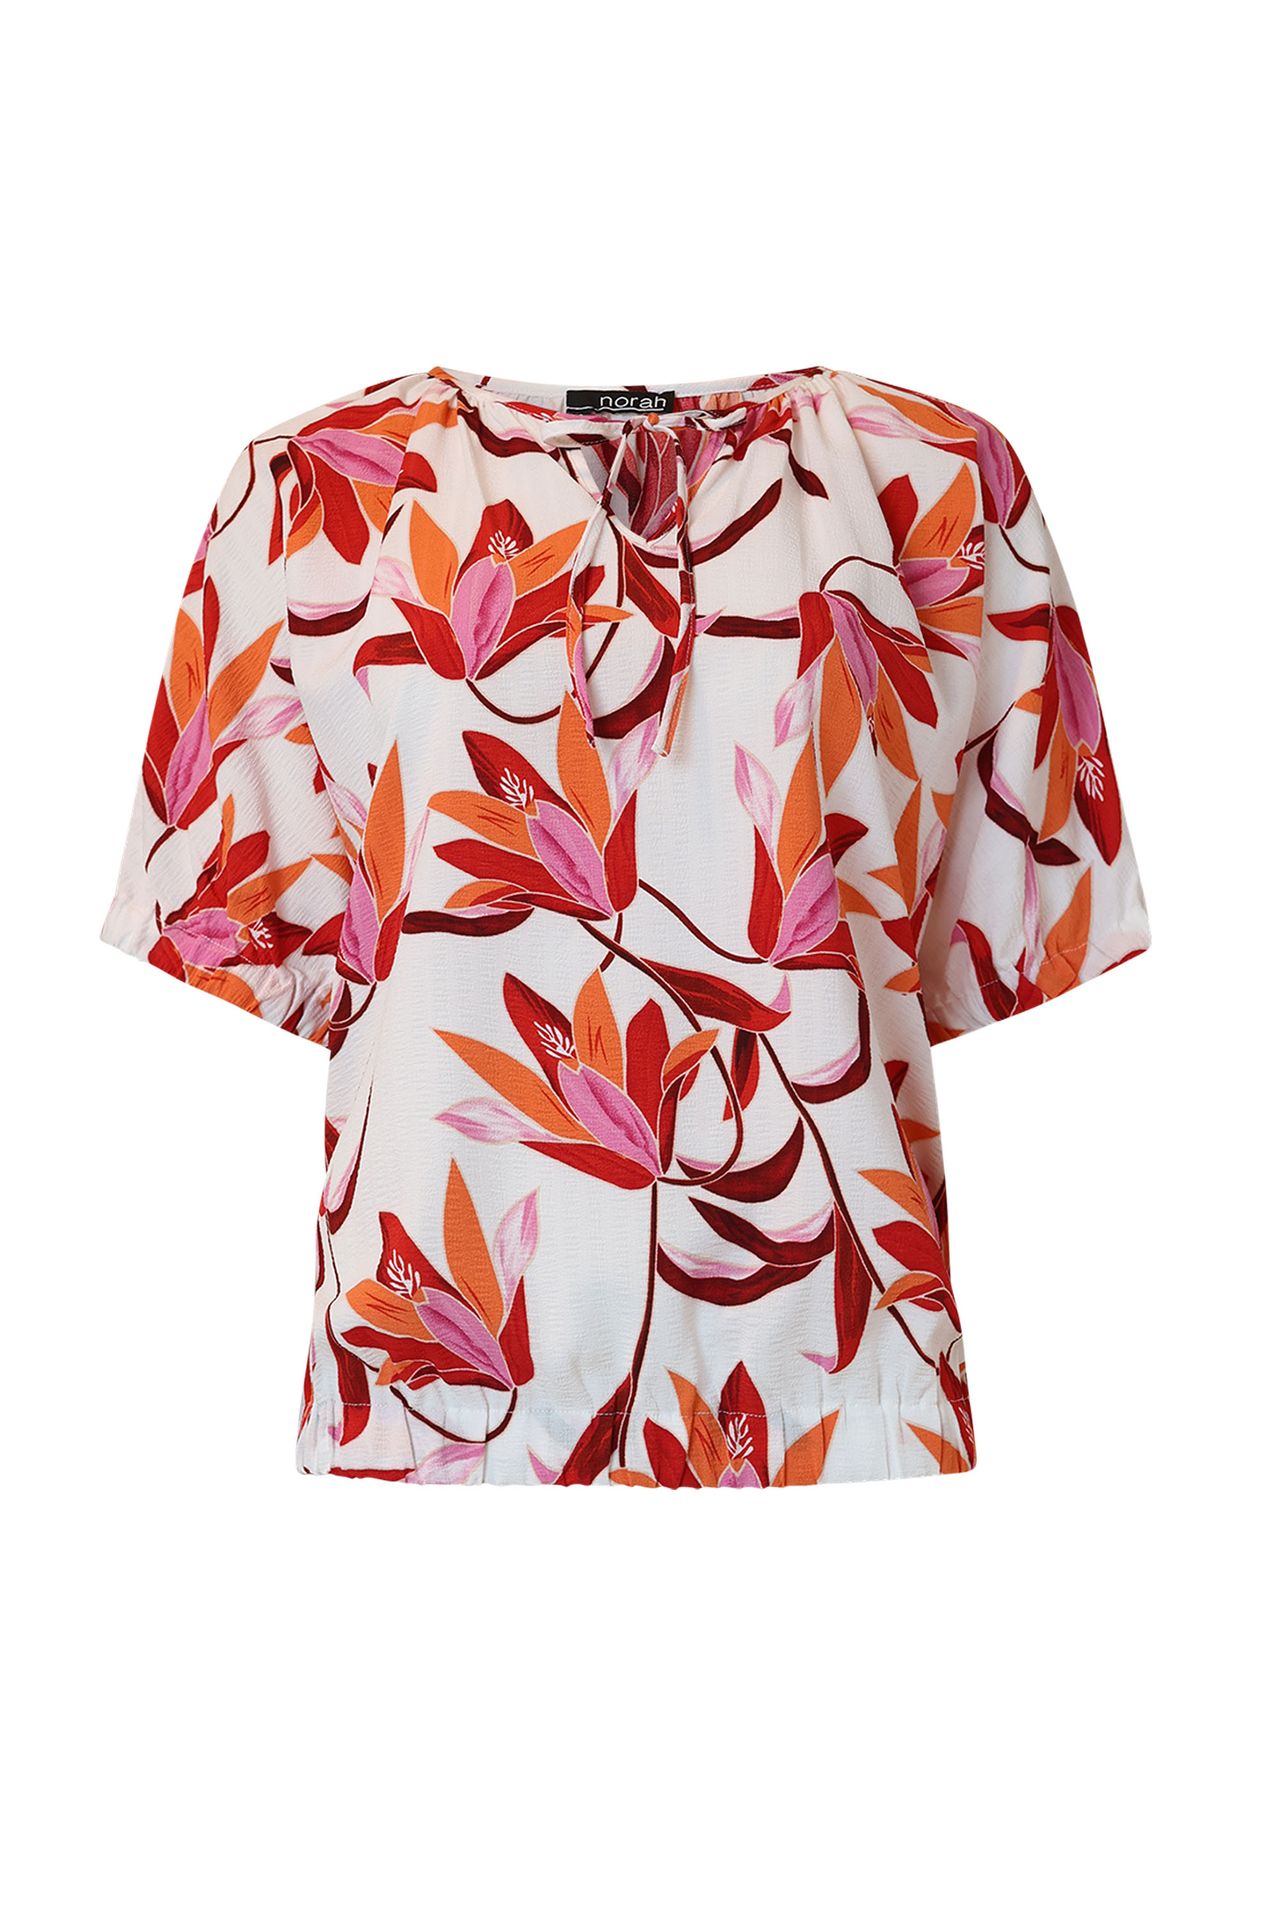 Norah Shirt met bloemenprint multicolor 214118-002